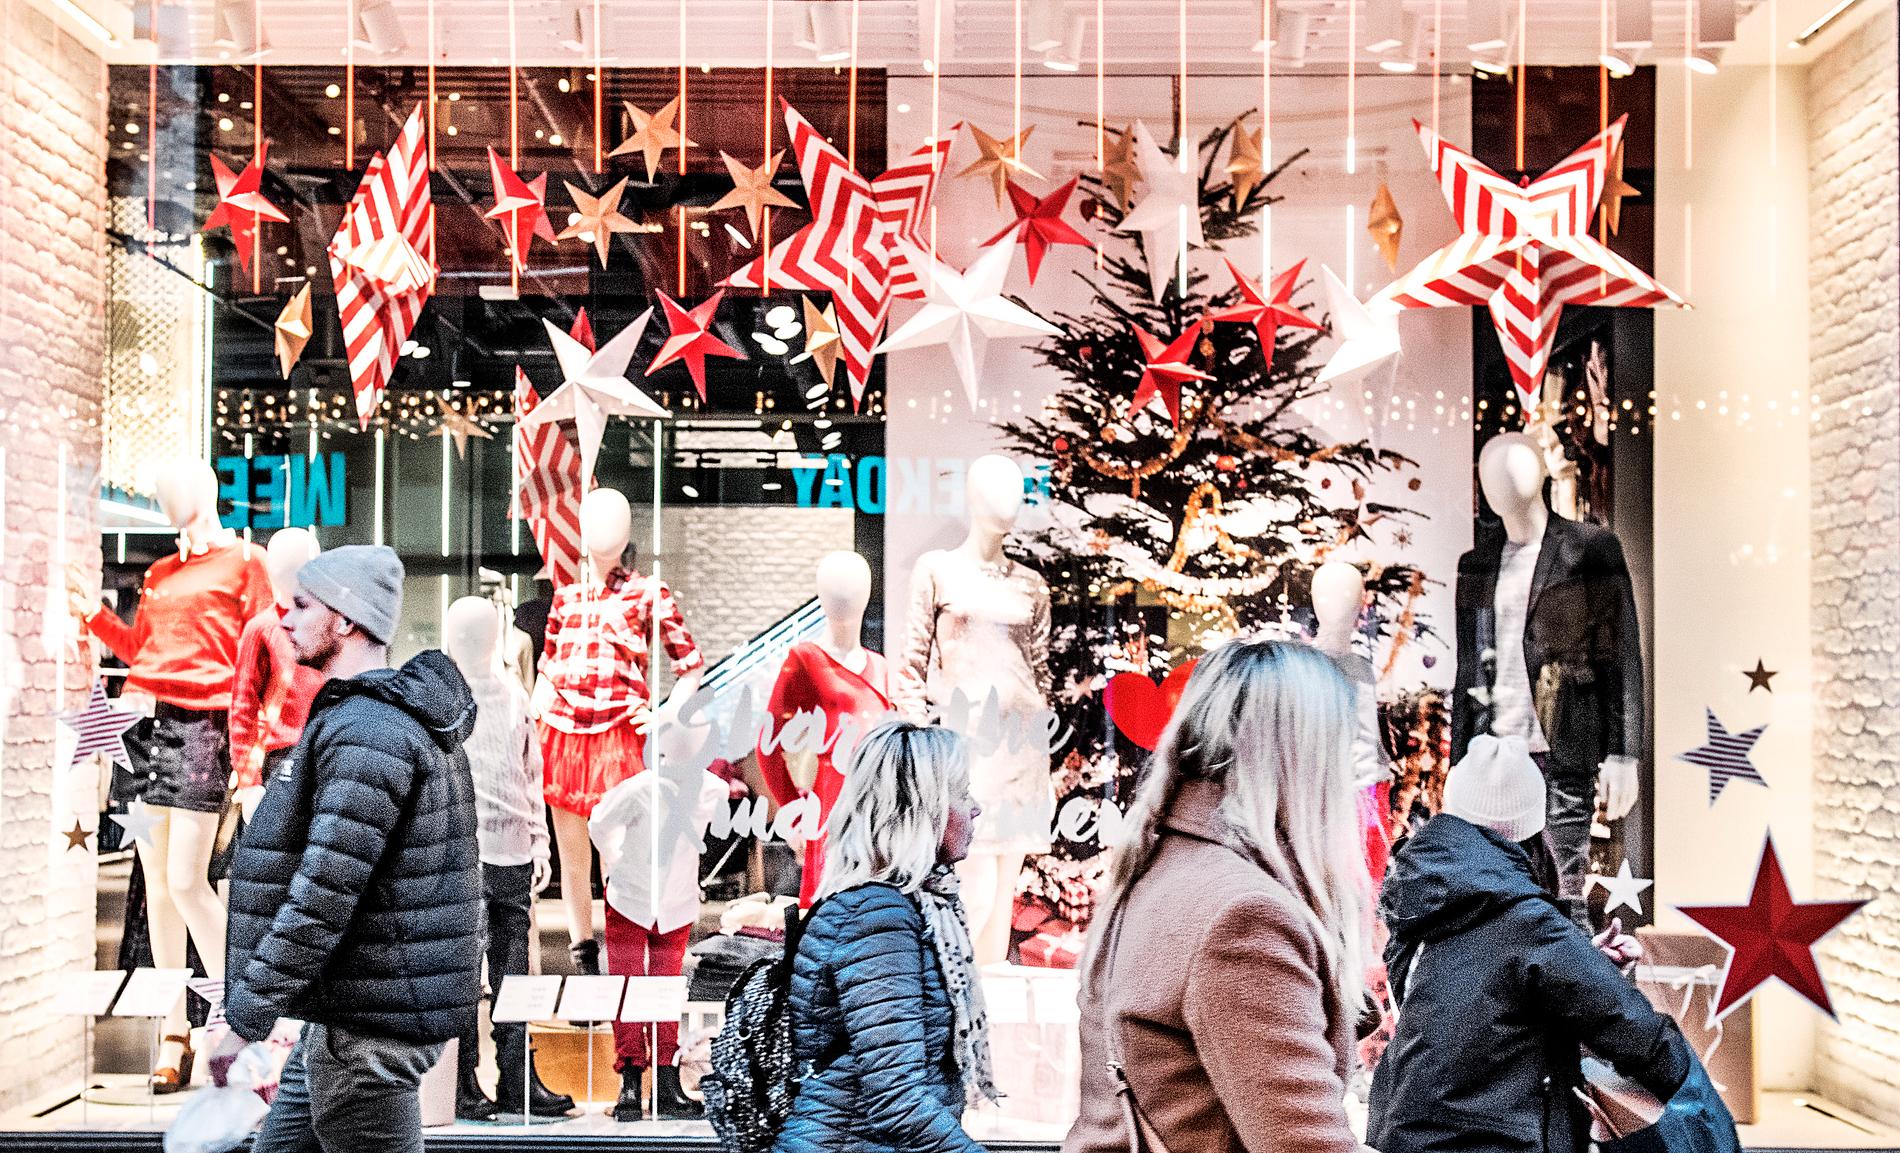 Svenska hushåll har för avsikt att spendera mindre pengar inför årets jul än tidigare år. Arkivbild.